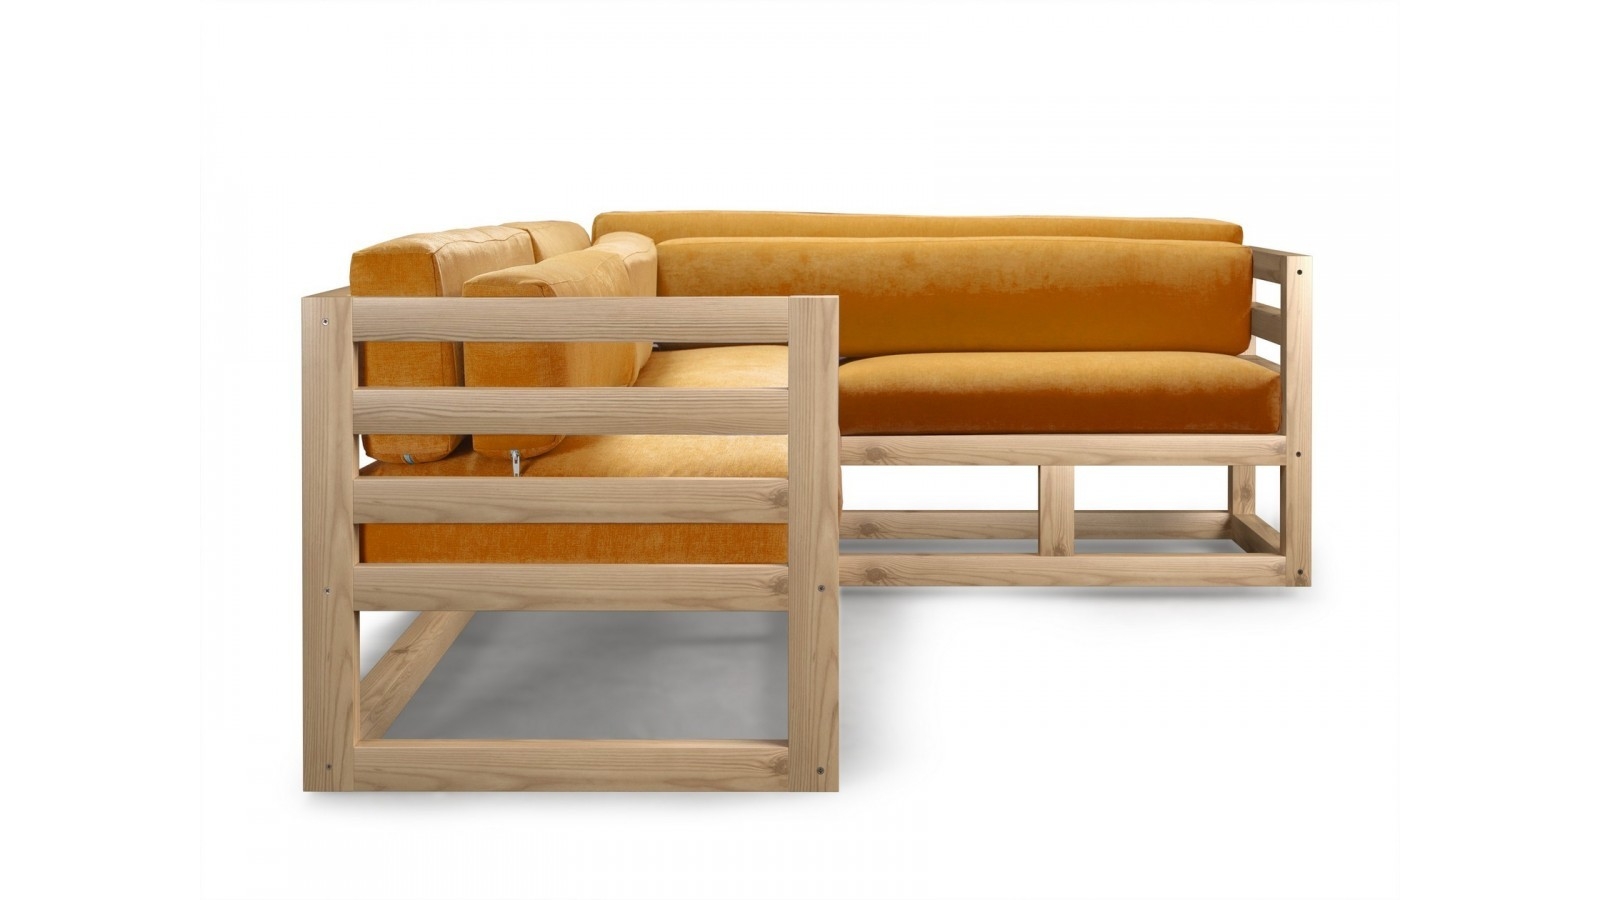 Купить угловой диван в стиле LOFT из дерева